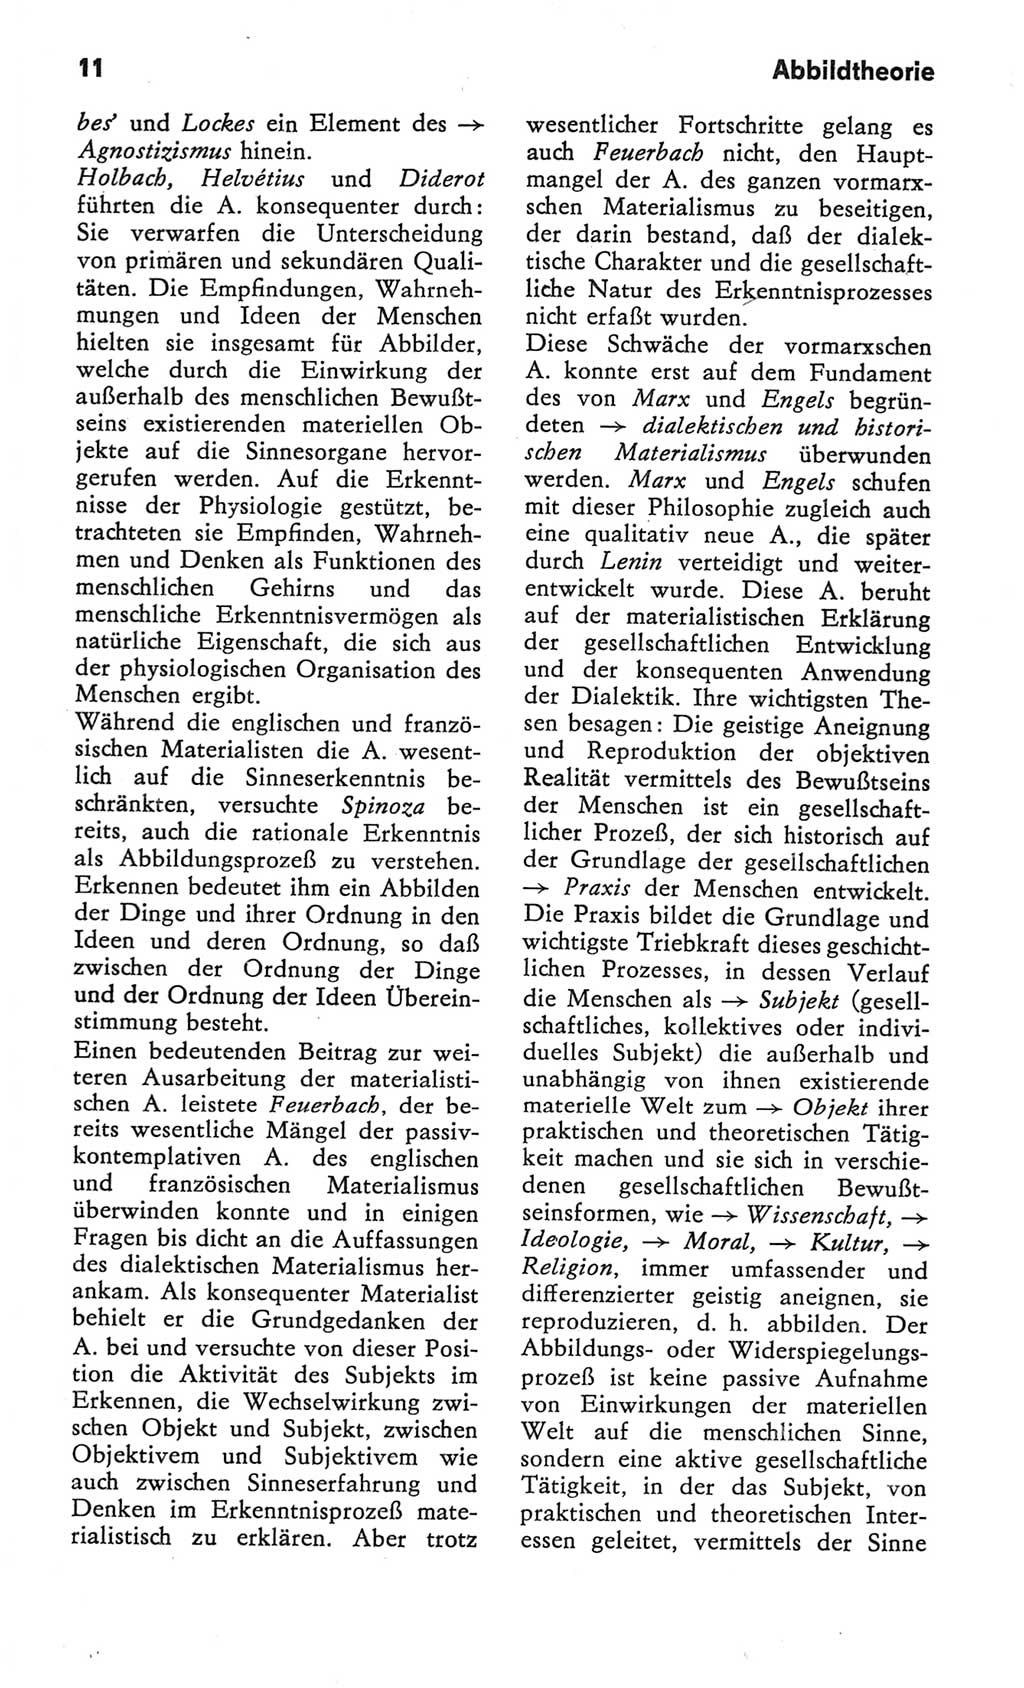 Kleines Wörterbuch der marxistisch-leninistischen Philosophie [Deutsche Demokratische Republik (DDR)] 1982, Seite 11 (Kl. Wb. ML Phil. DDR 1982, S. 11)